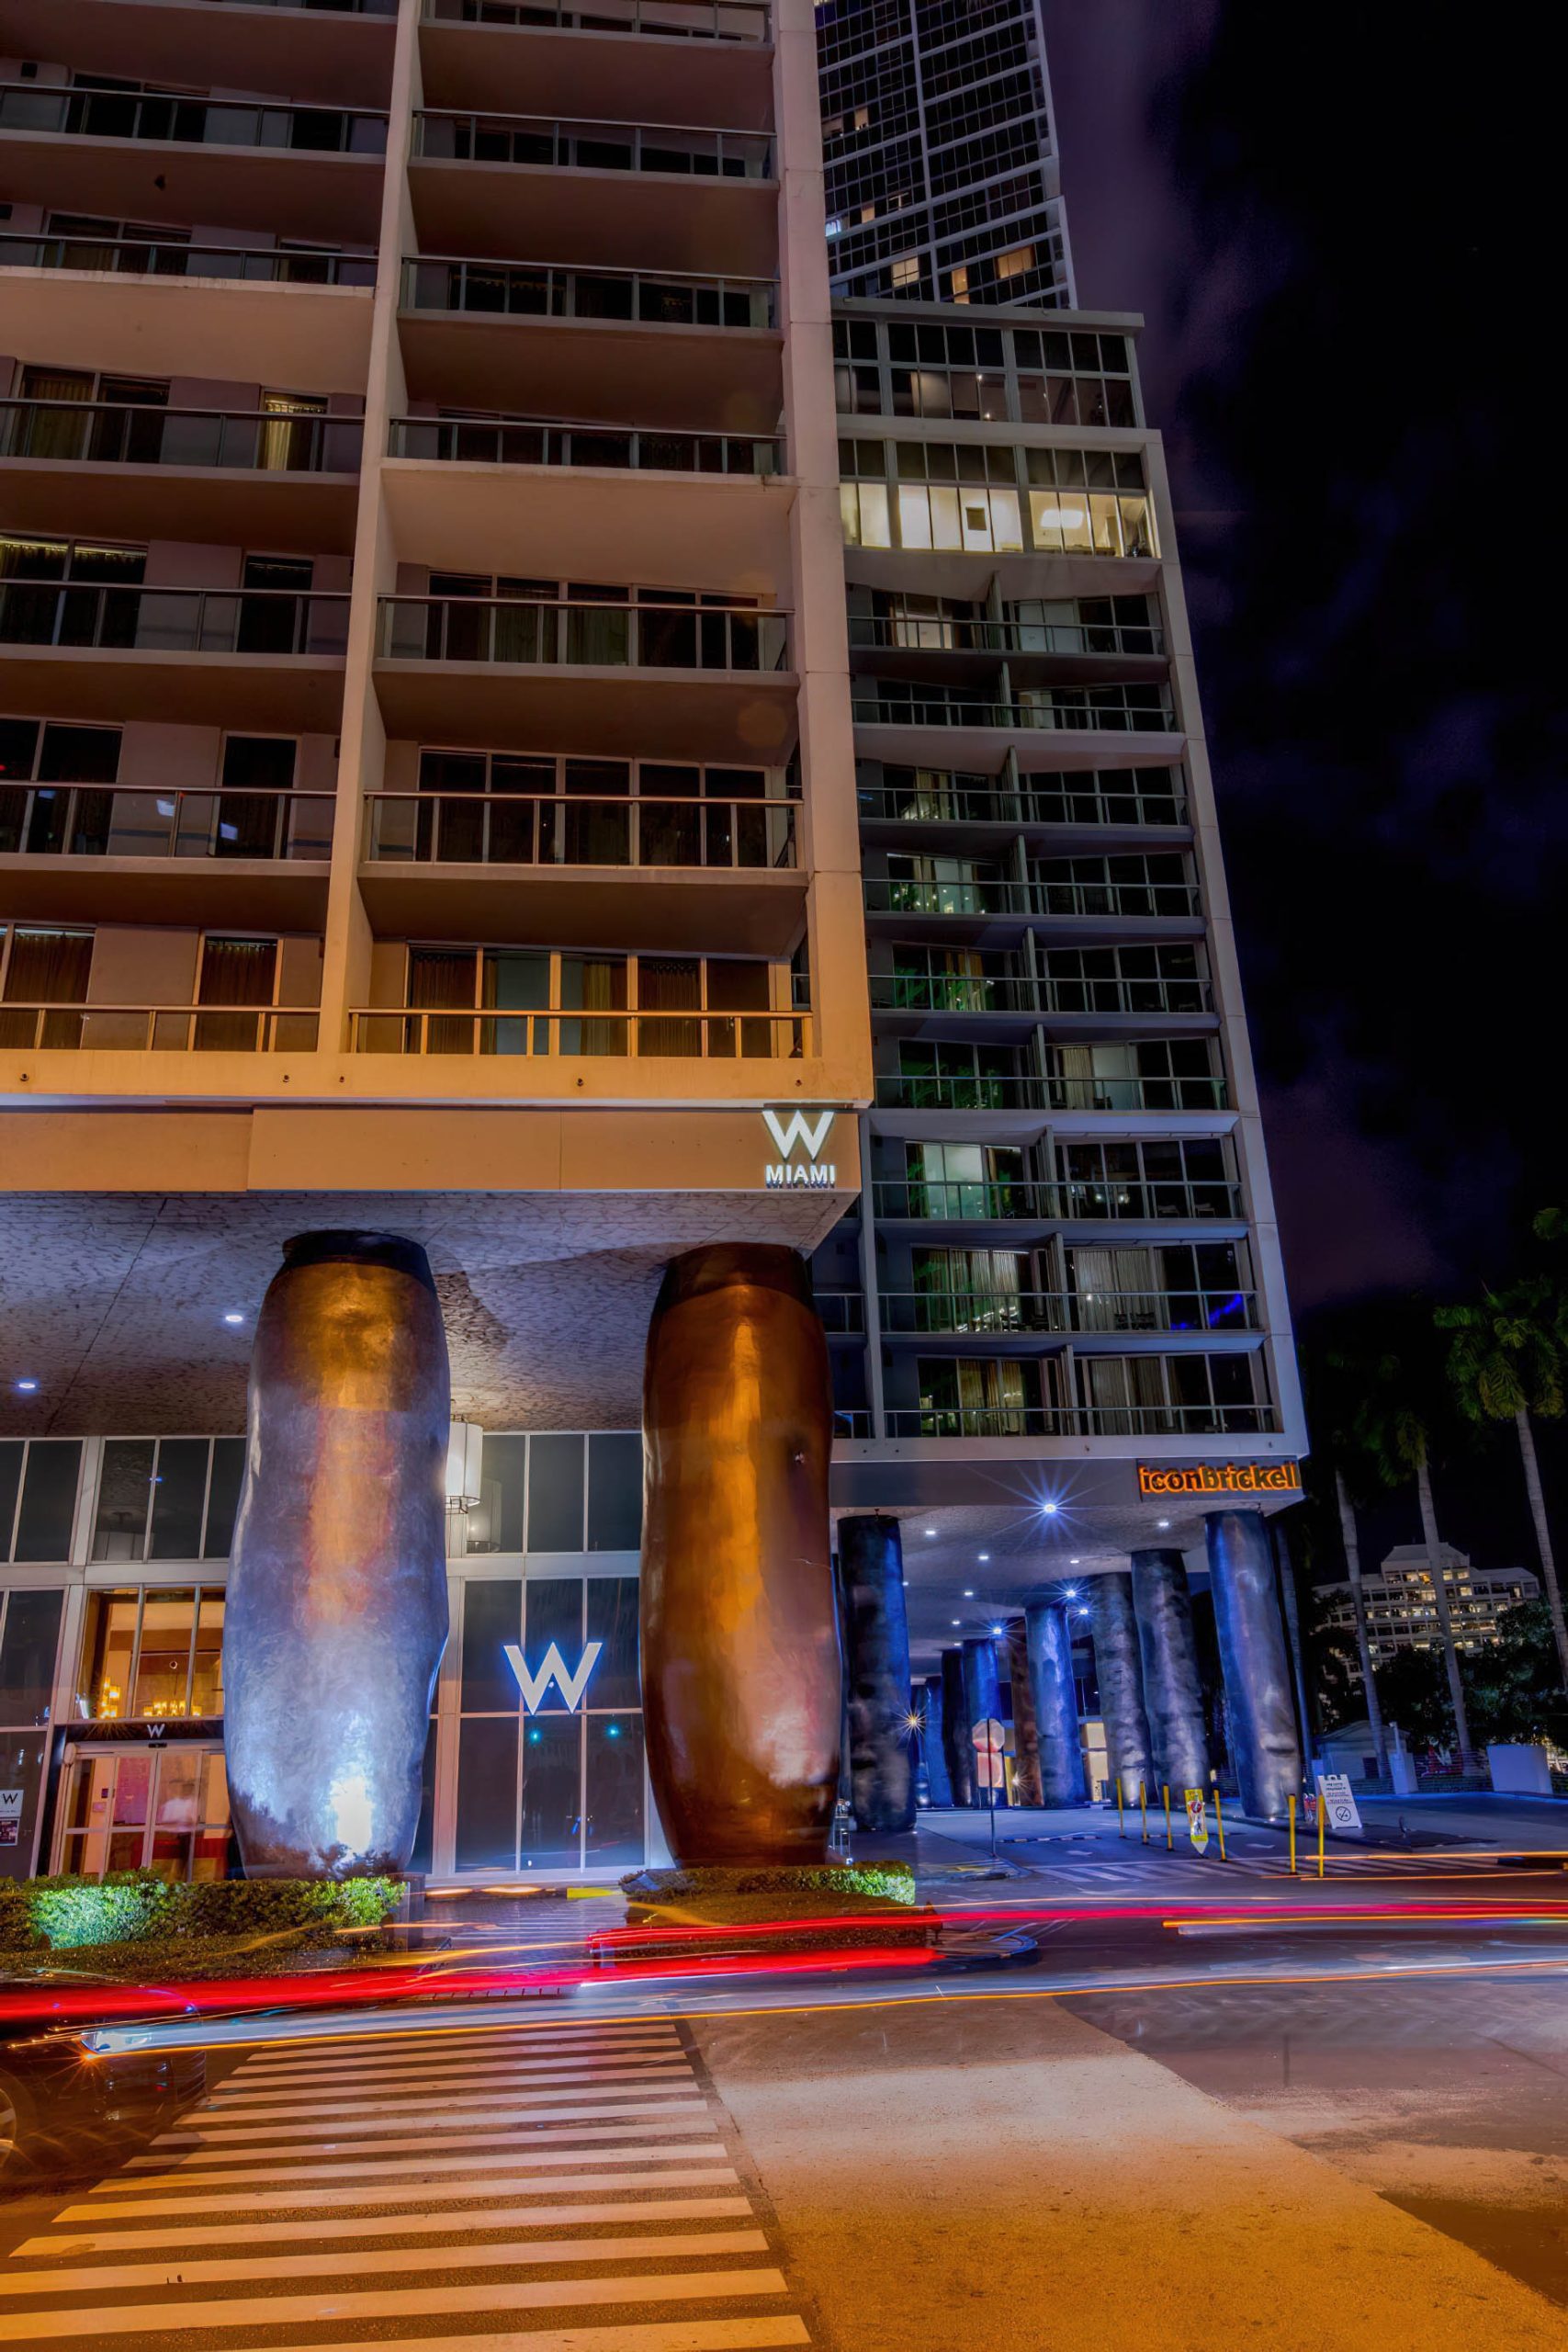 W Miami Hotel – Miami, FL, USA – Night View